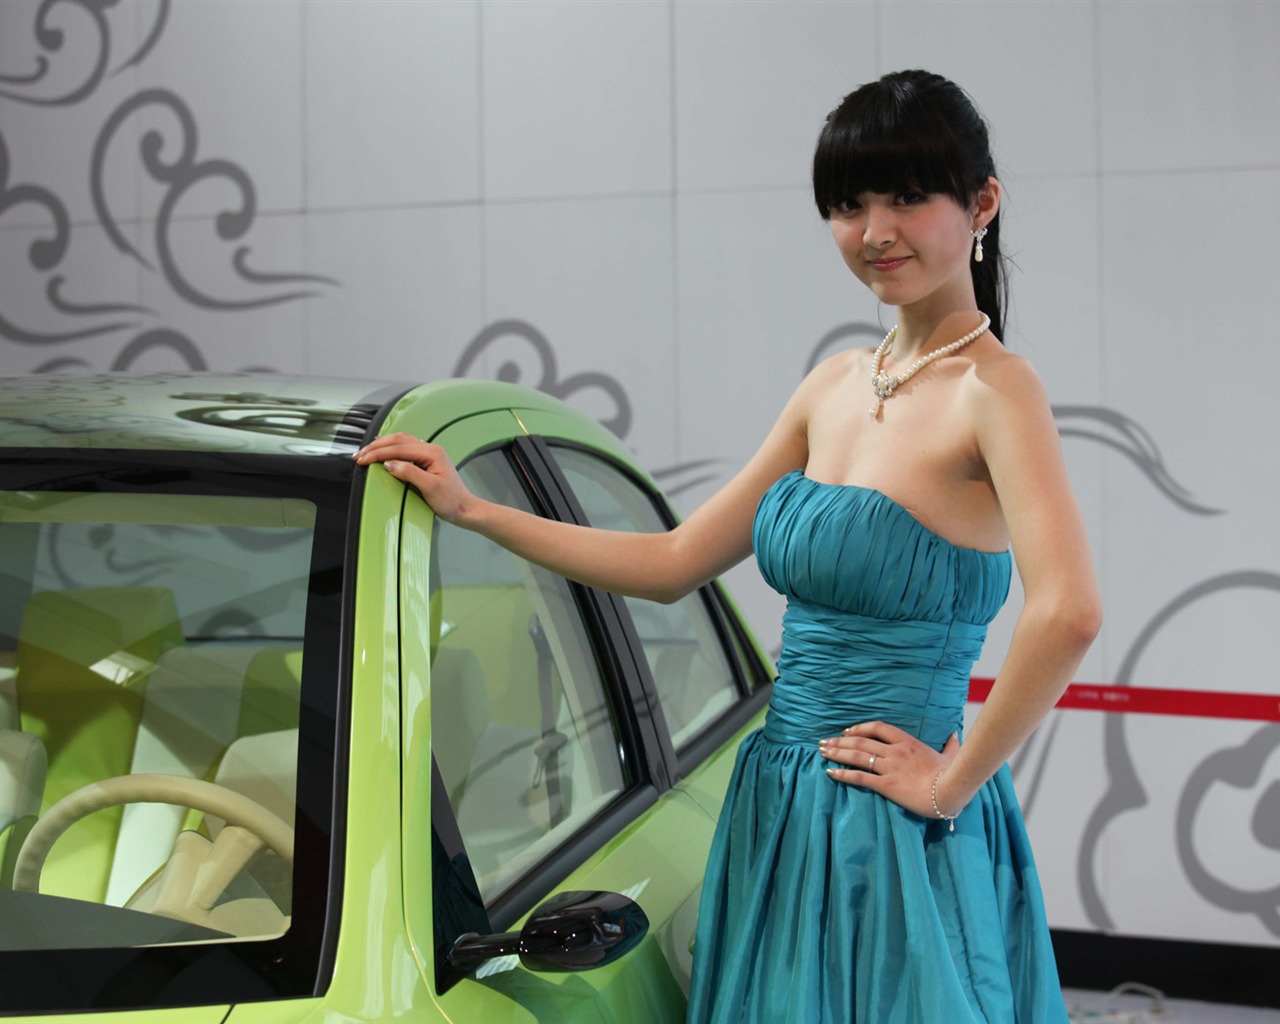 2010 v Pekingu Mezinárodním autosalonu krása (1) (vítr honí mraky práce) #34 - 1280x1024